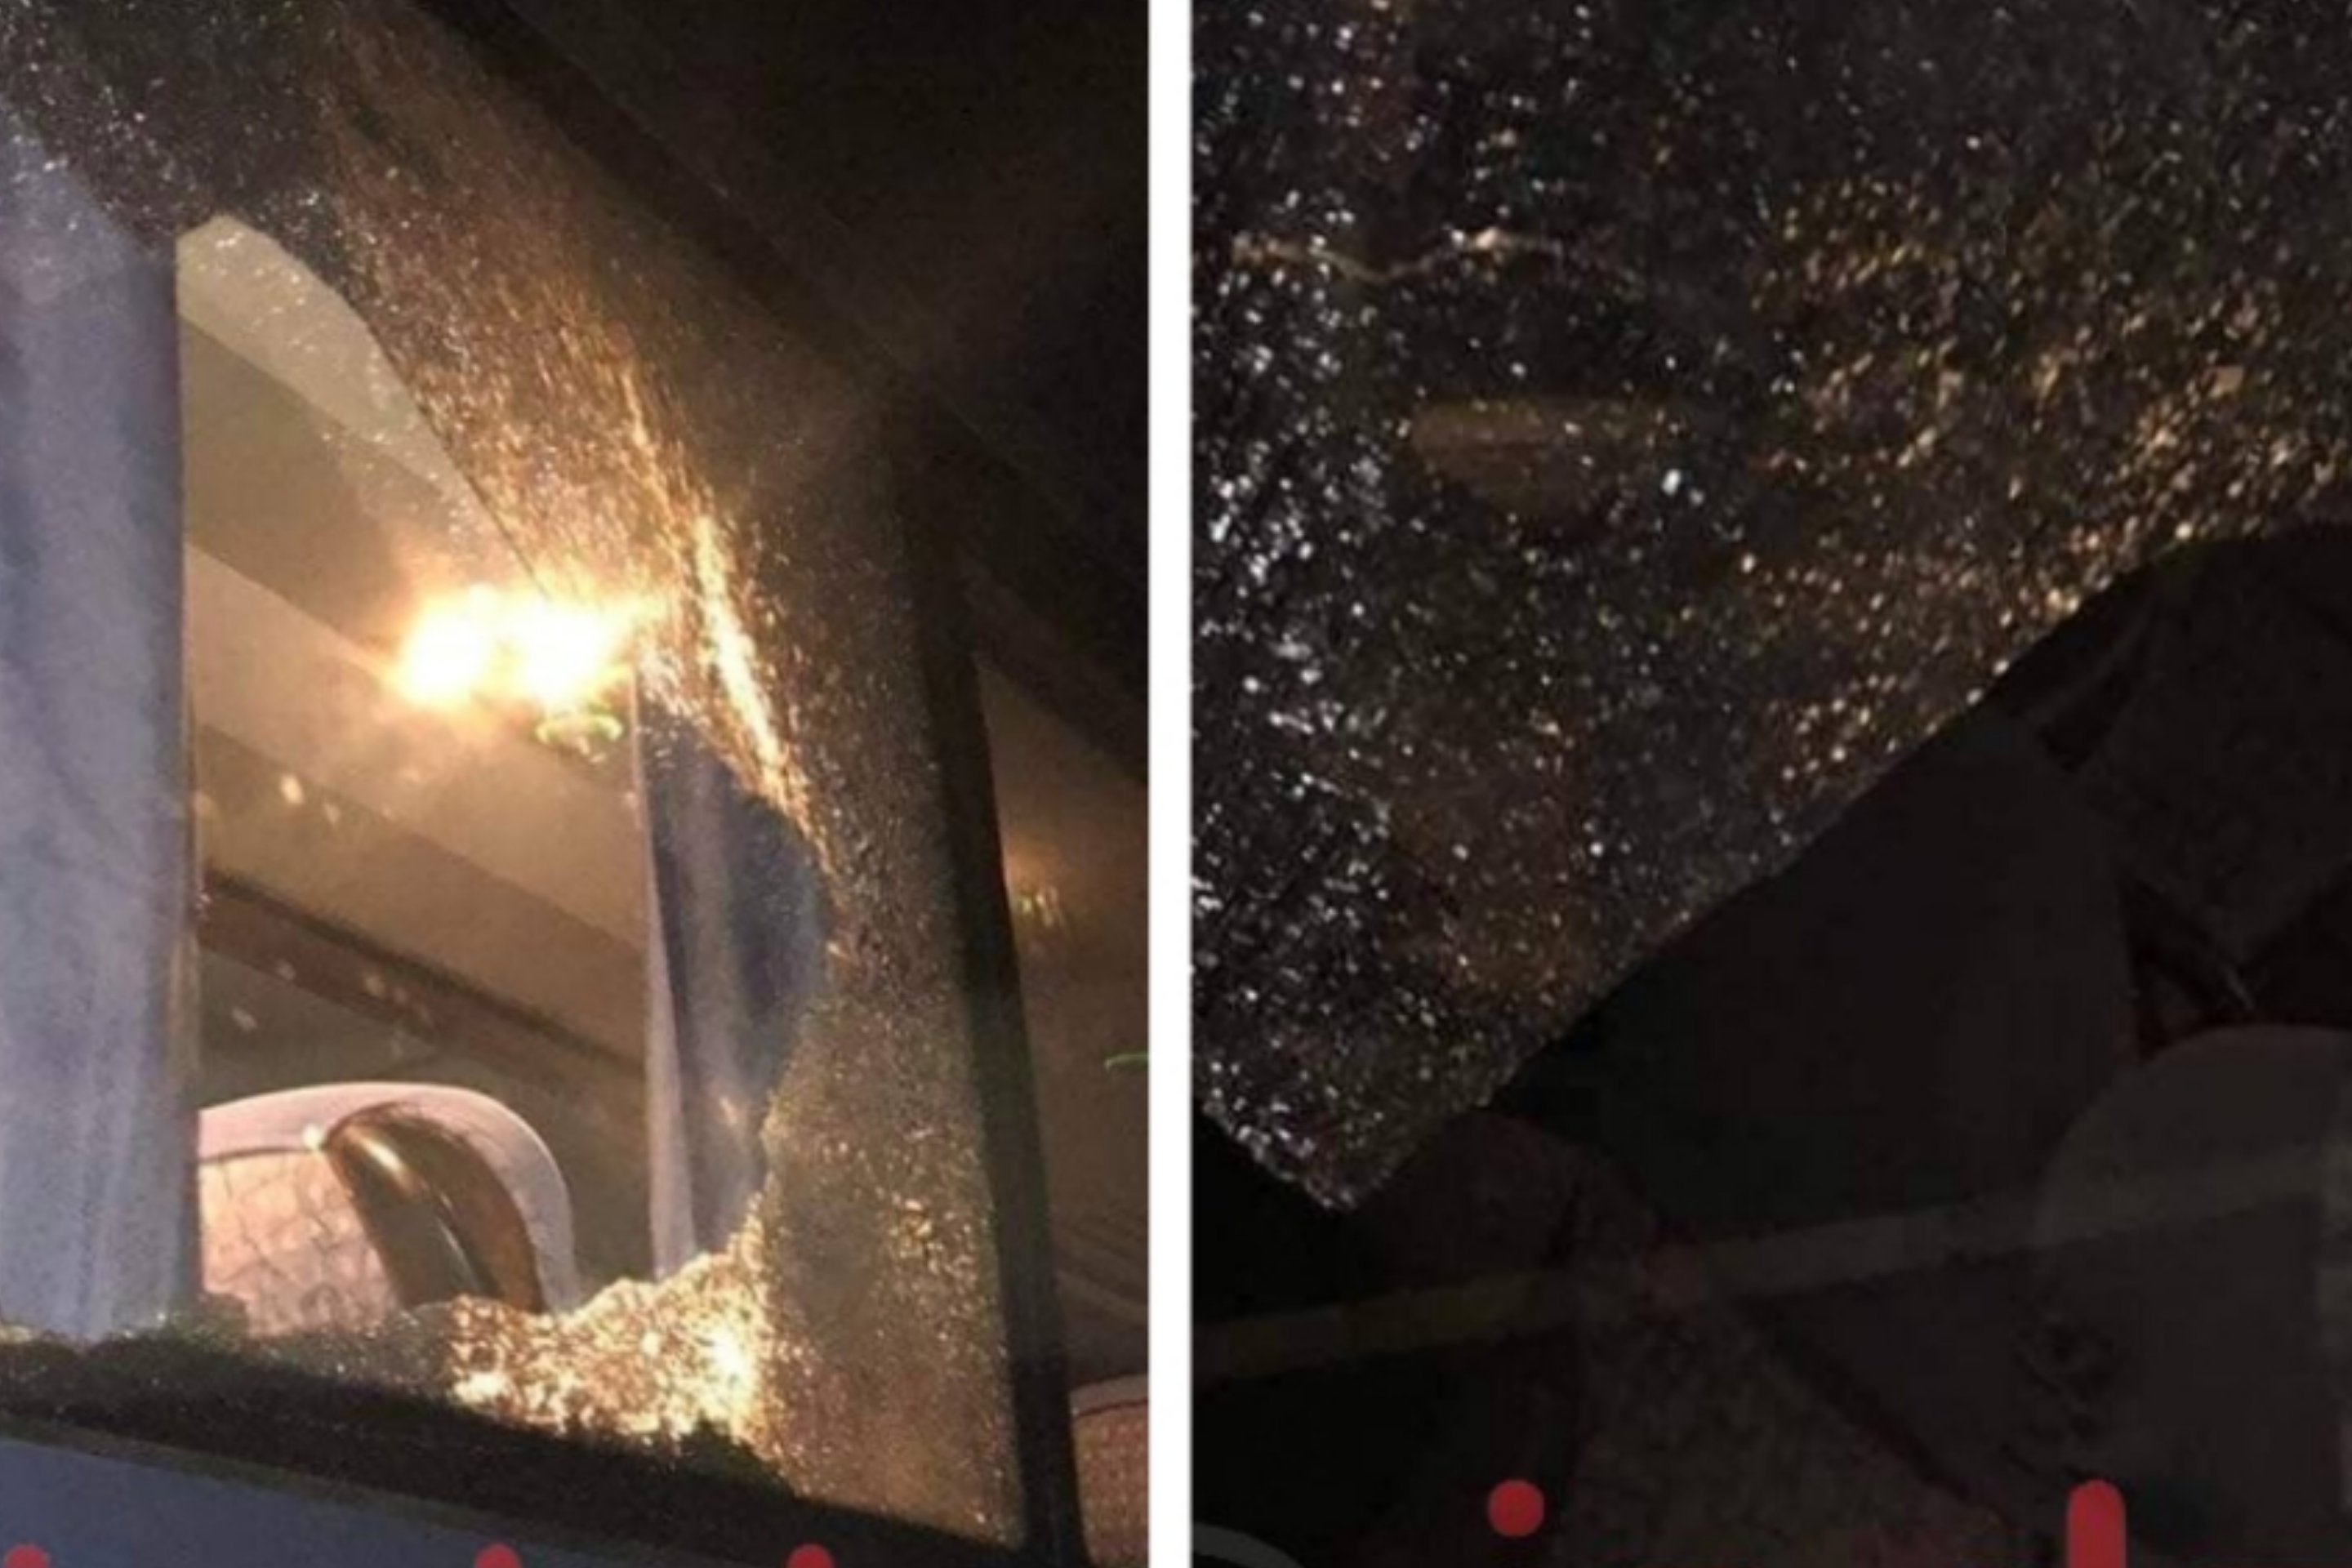 Autobusi nga Kosova sulmohet me gurë në Serbi